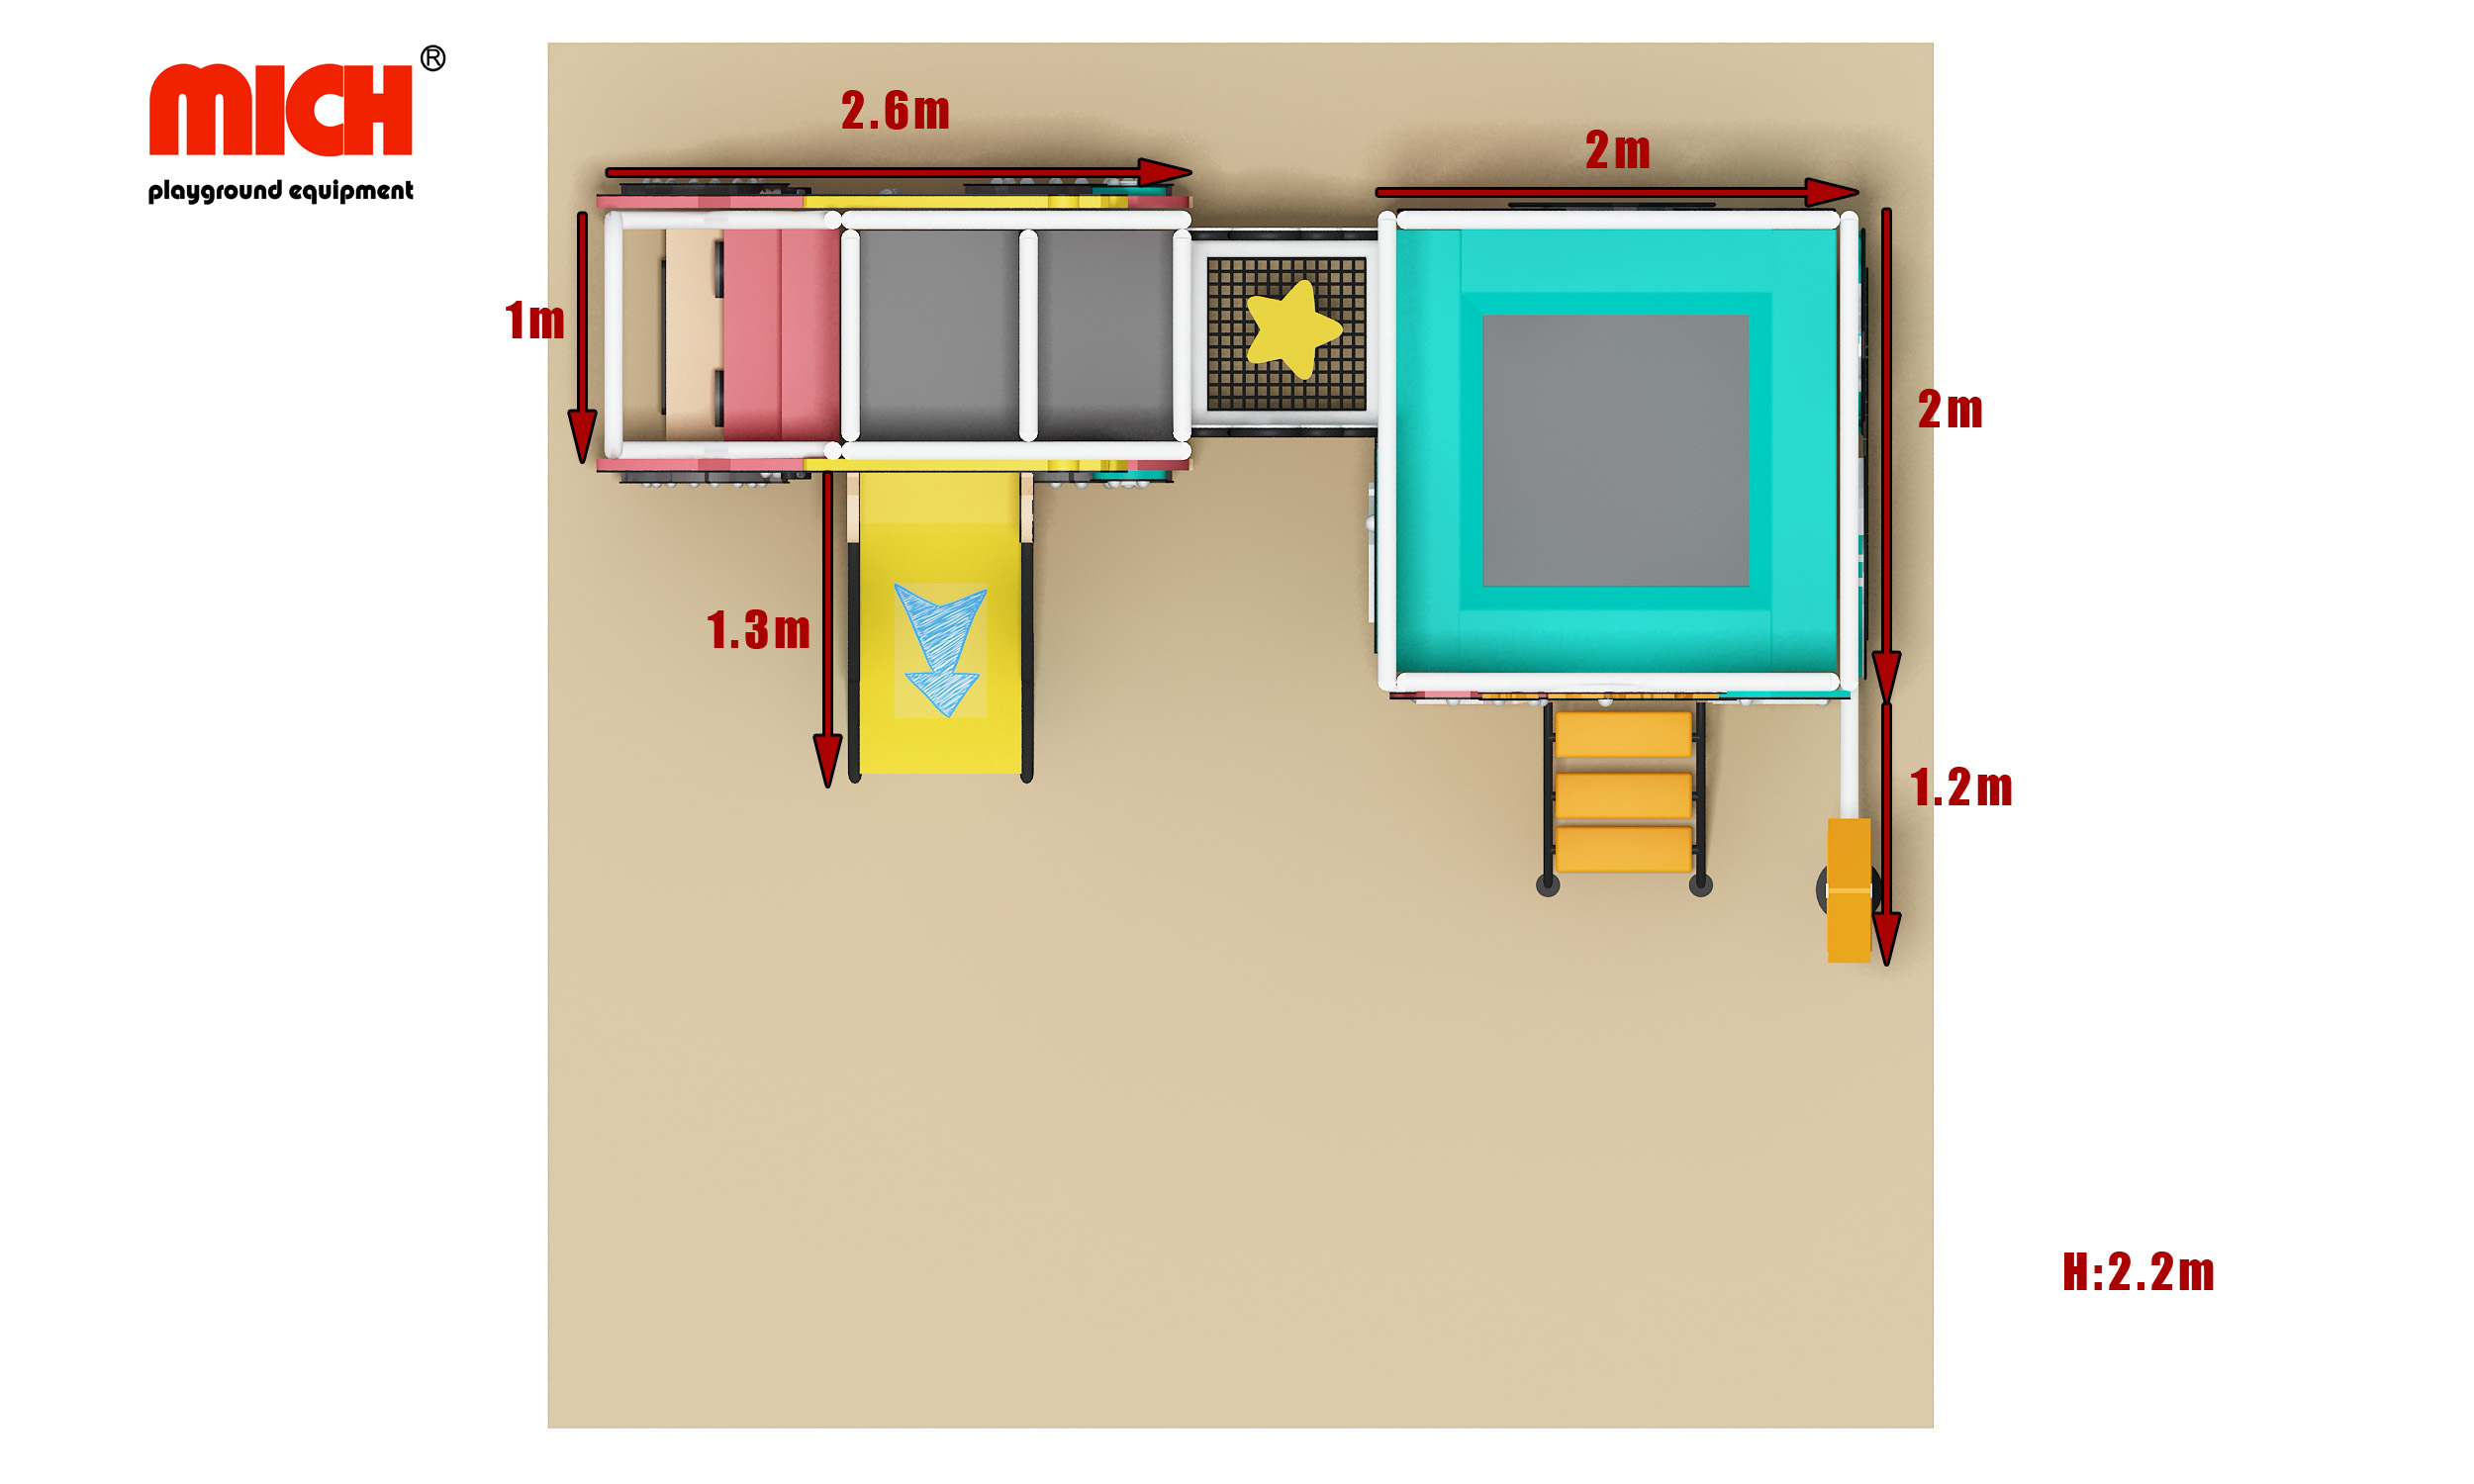 Детская мультипликационная игровая площадка с маленьким набором батута